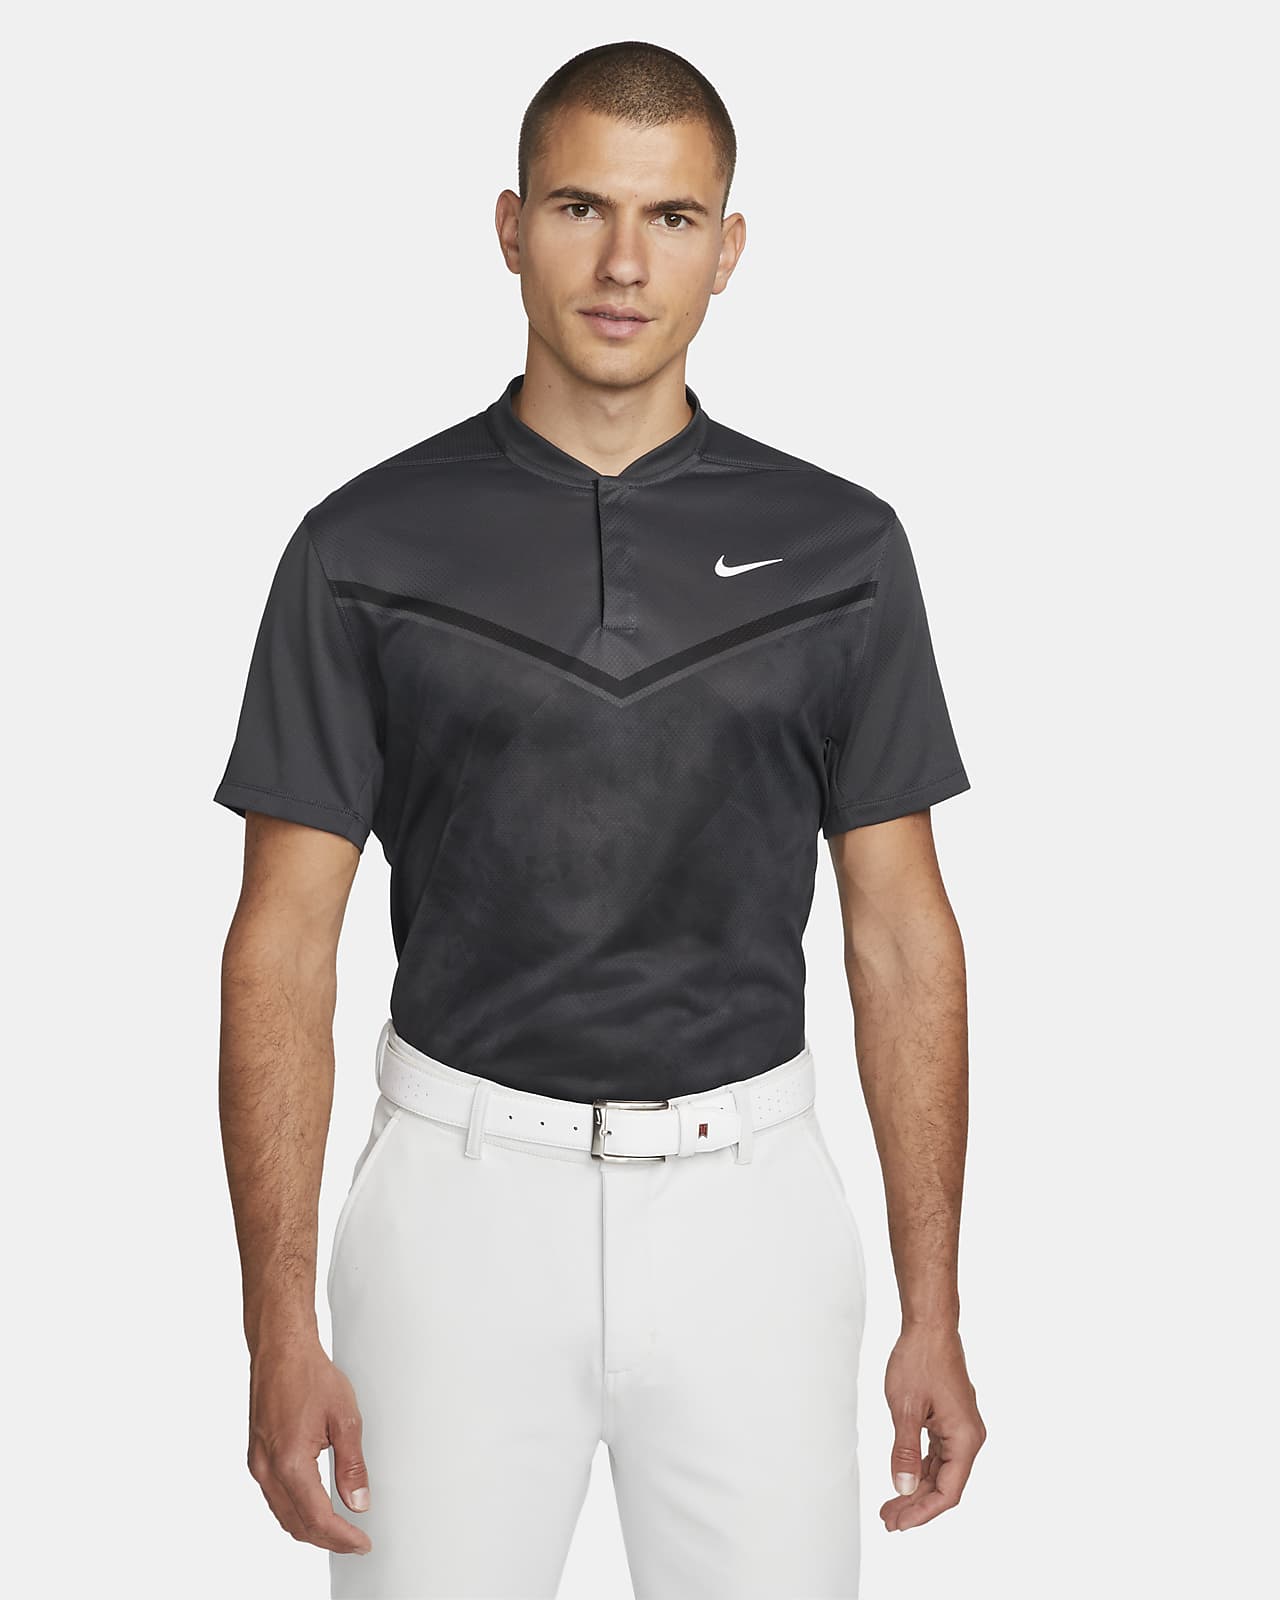 Pánská golfová polokošile Nike Dri-FIT ADV Tiger Woods s potiskem